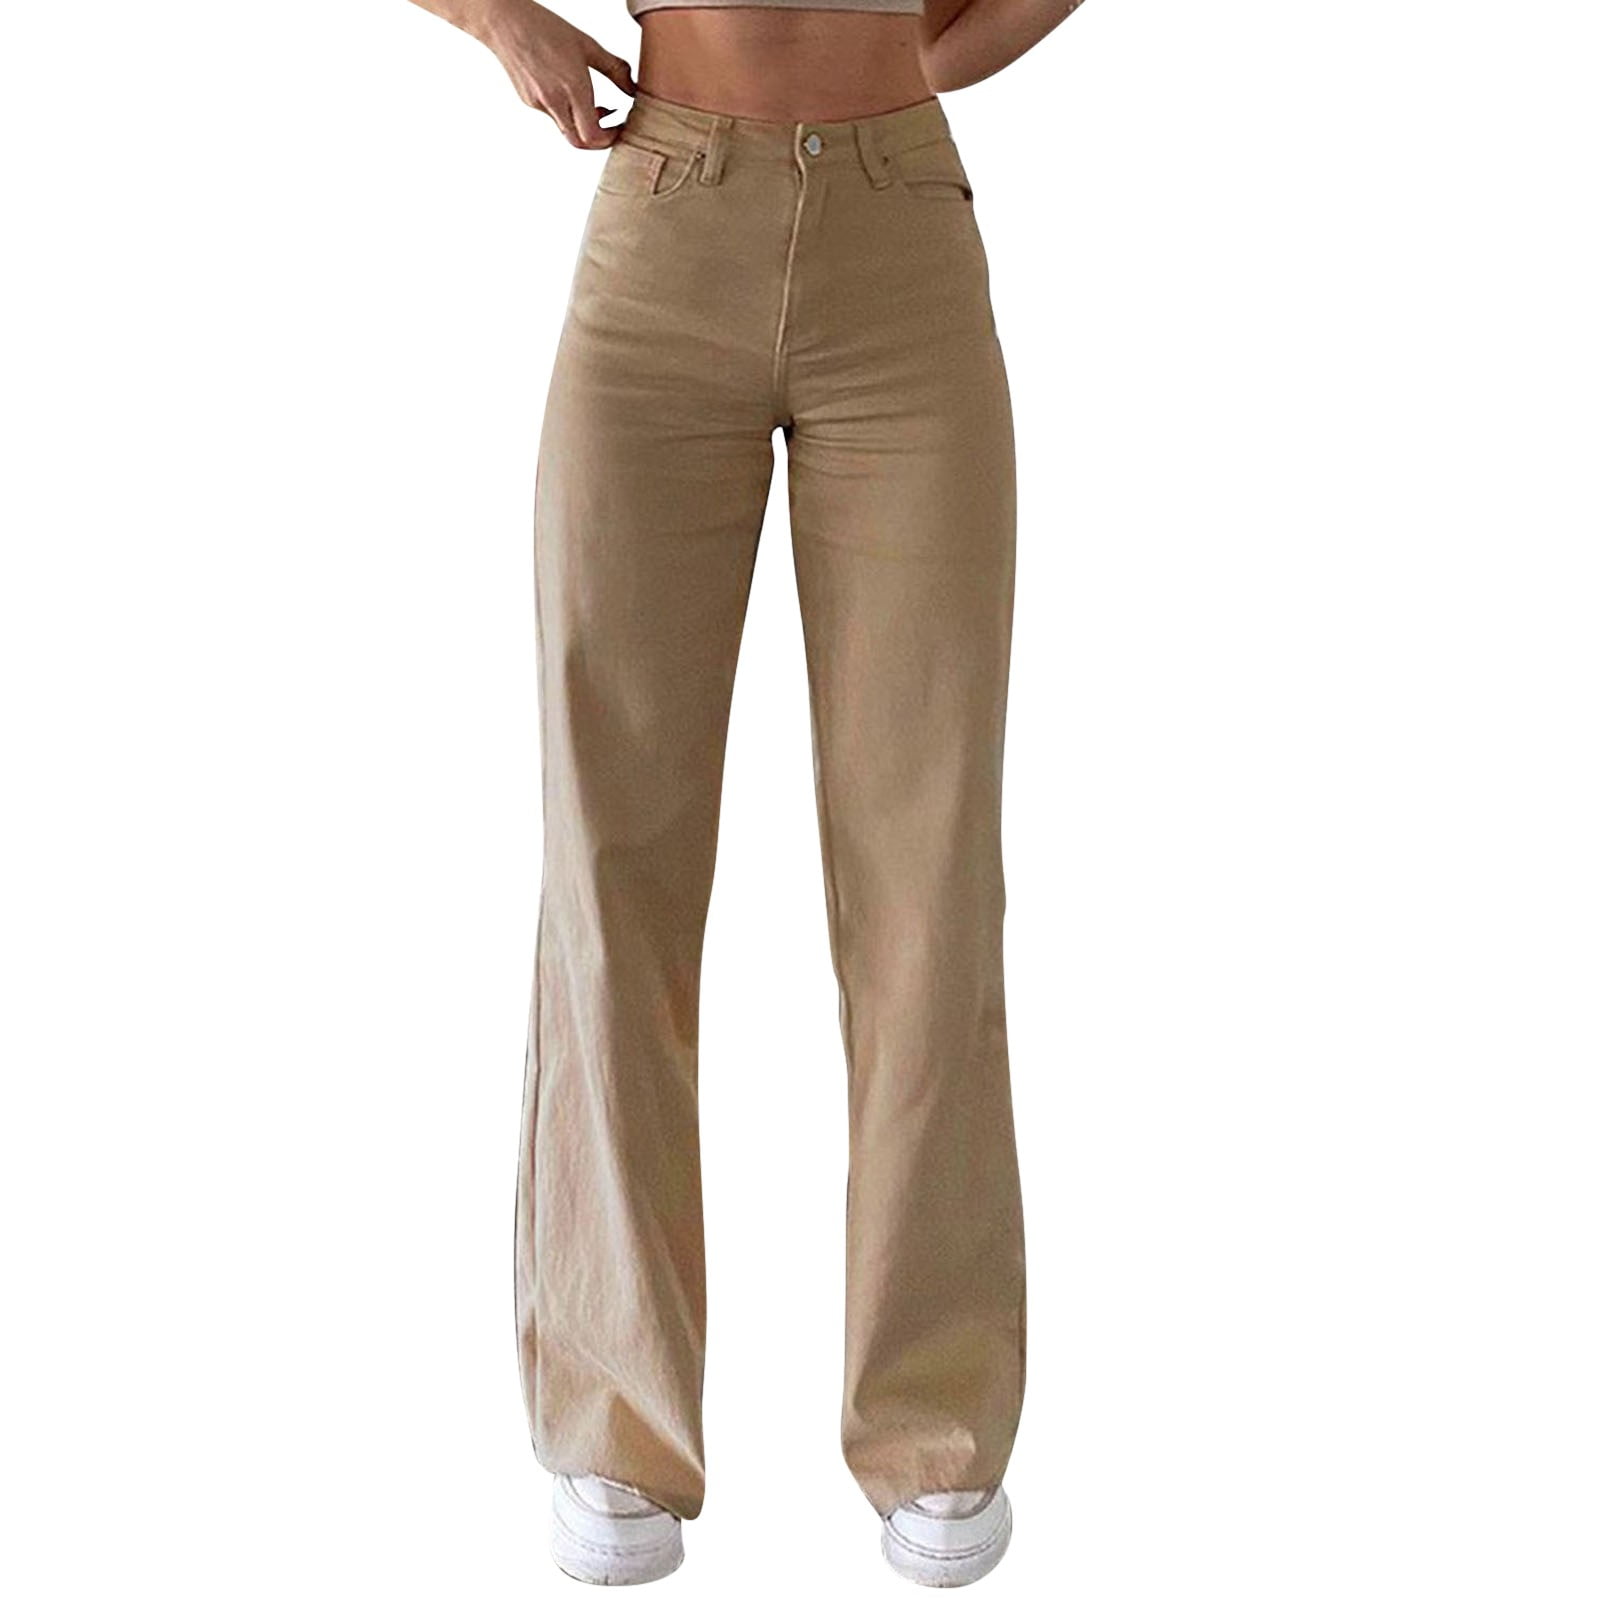 Fit 21 Dress Pants Women Business Casual Women Solid Color Jeans